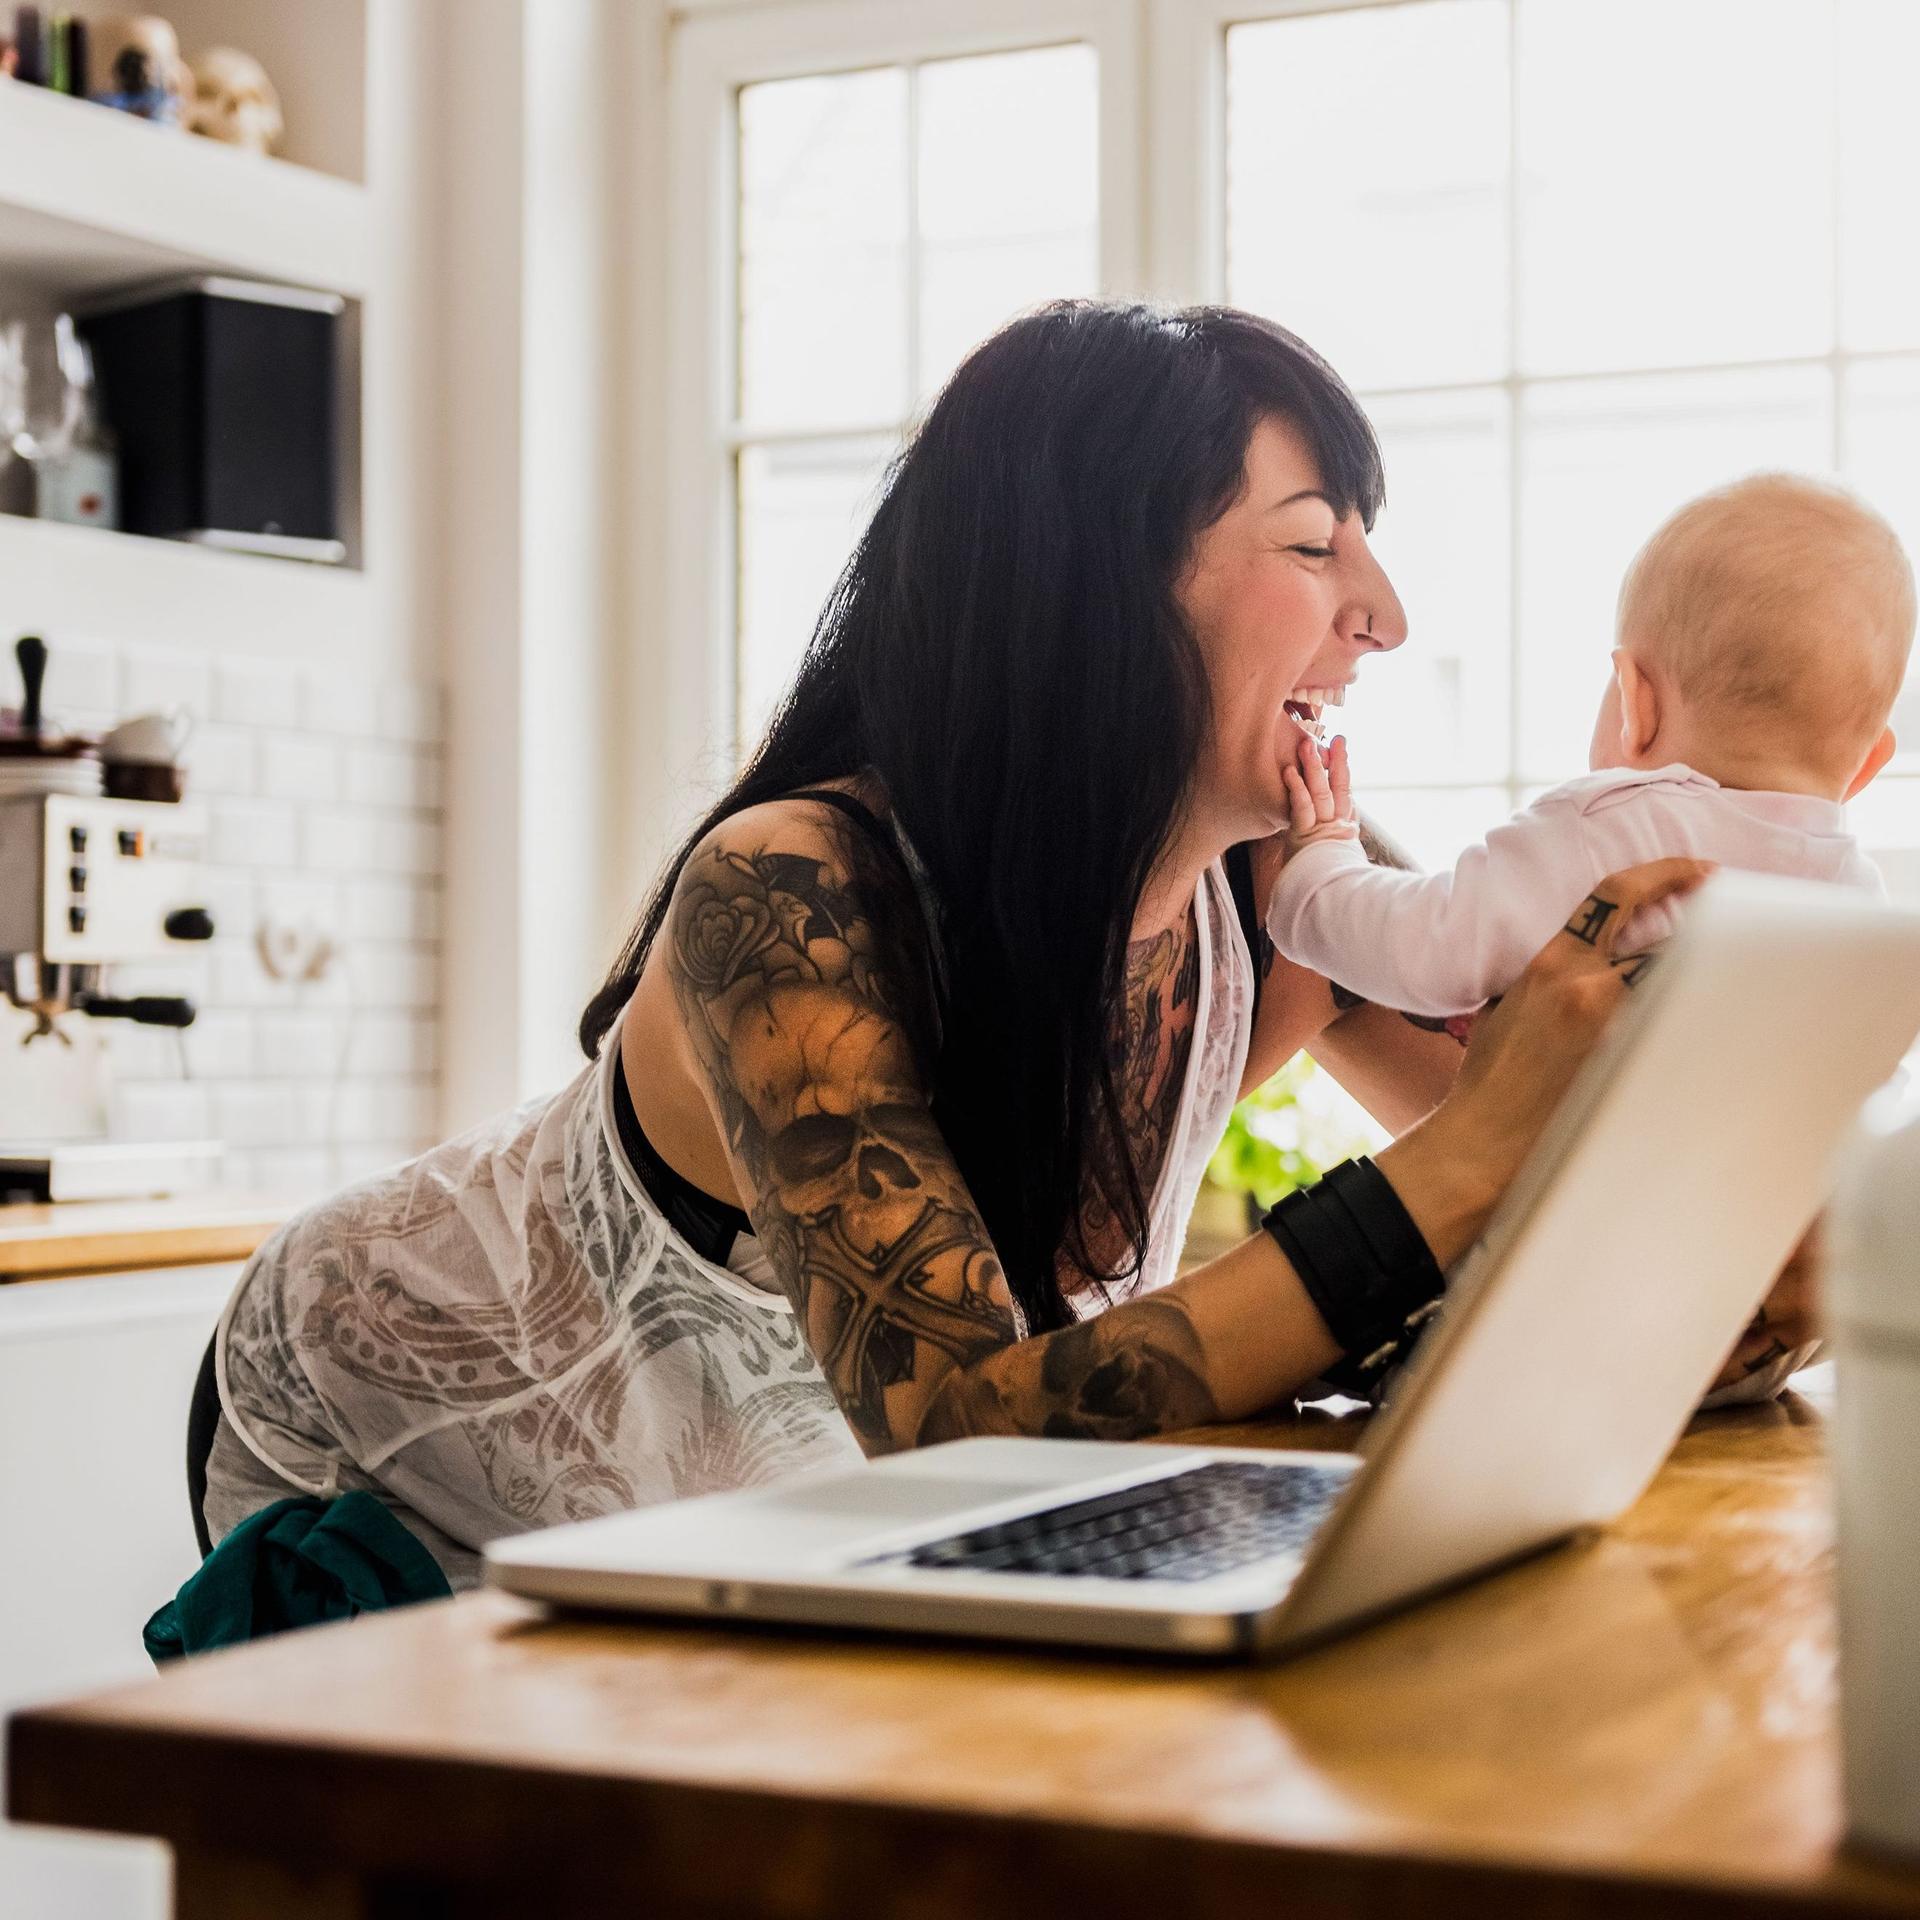 Eine junge tätowierte Mutter mit Baby in einer modernen hellen Küche. Neben ihr ist ein Laptop. Das Baby greift in das lachende Gesicht der Mutter.